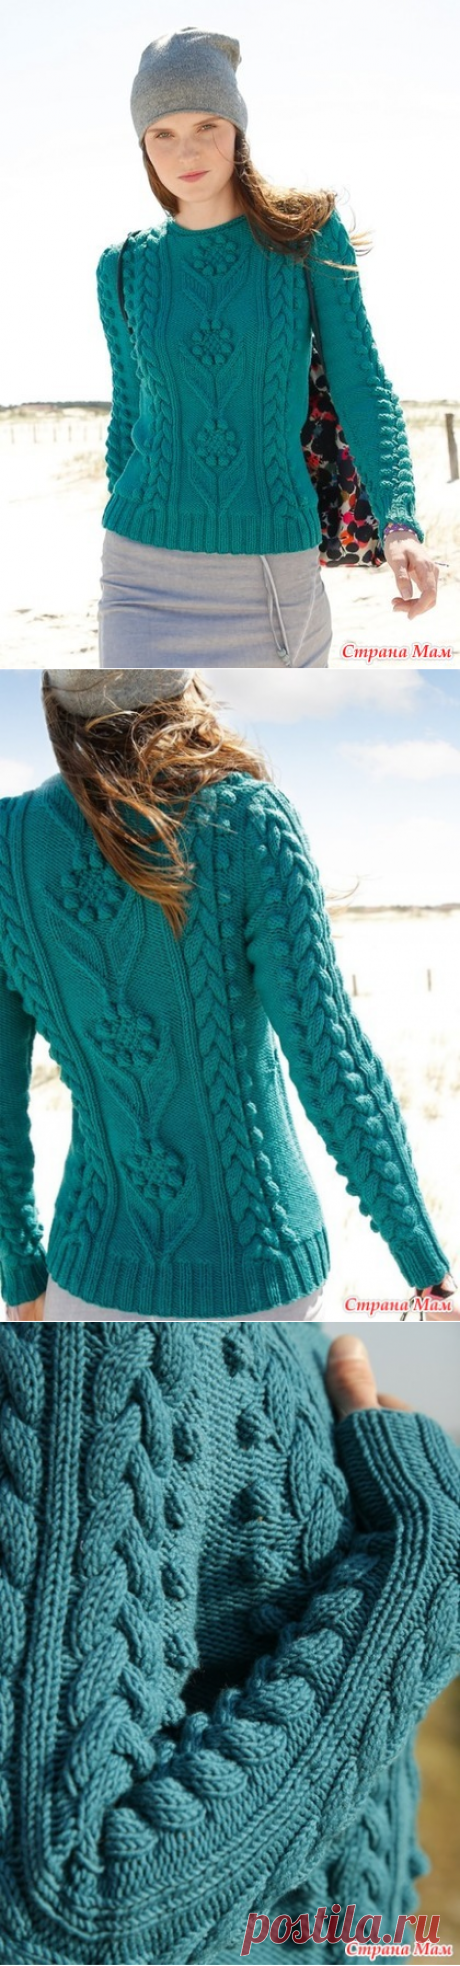 Очаровательный пуловер - Вязание - Страна Мам